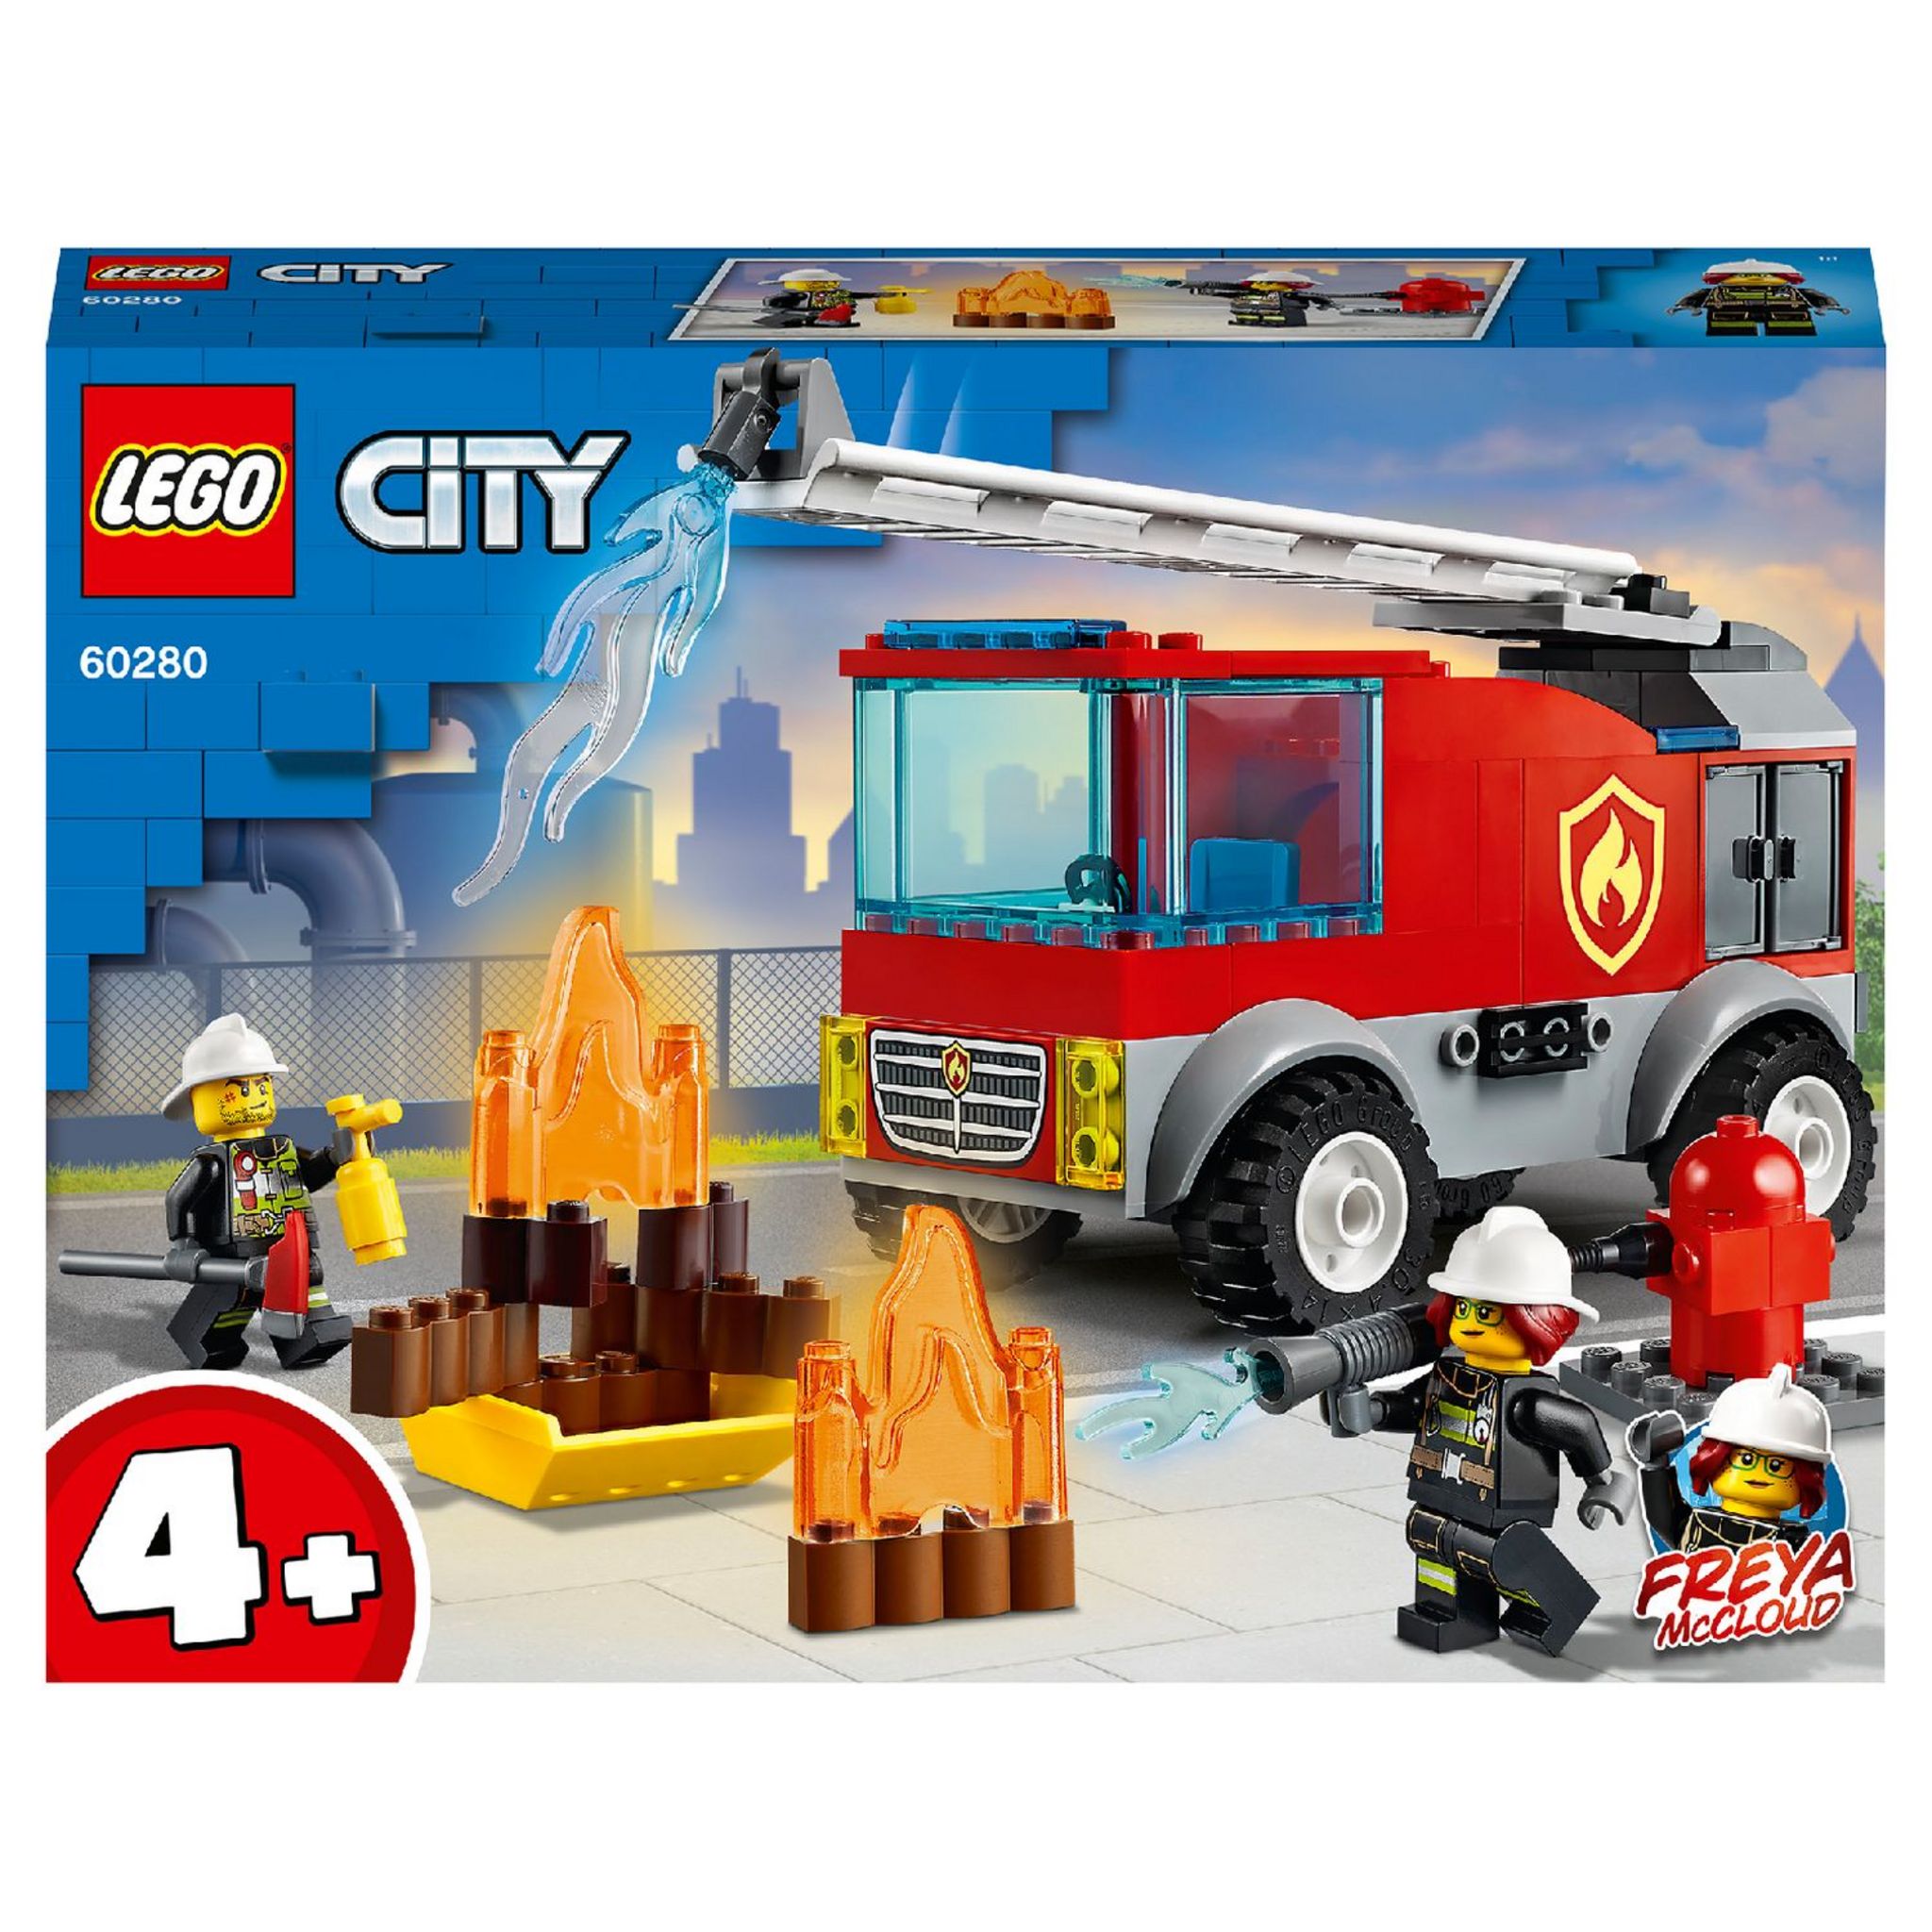 60374 LEGO® CITY Voiture de service des pompiers